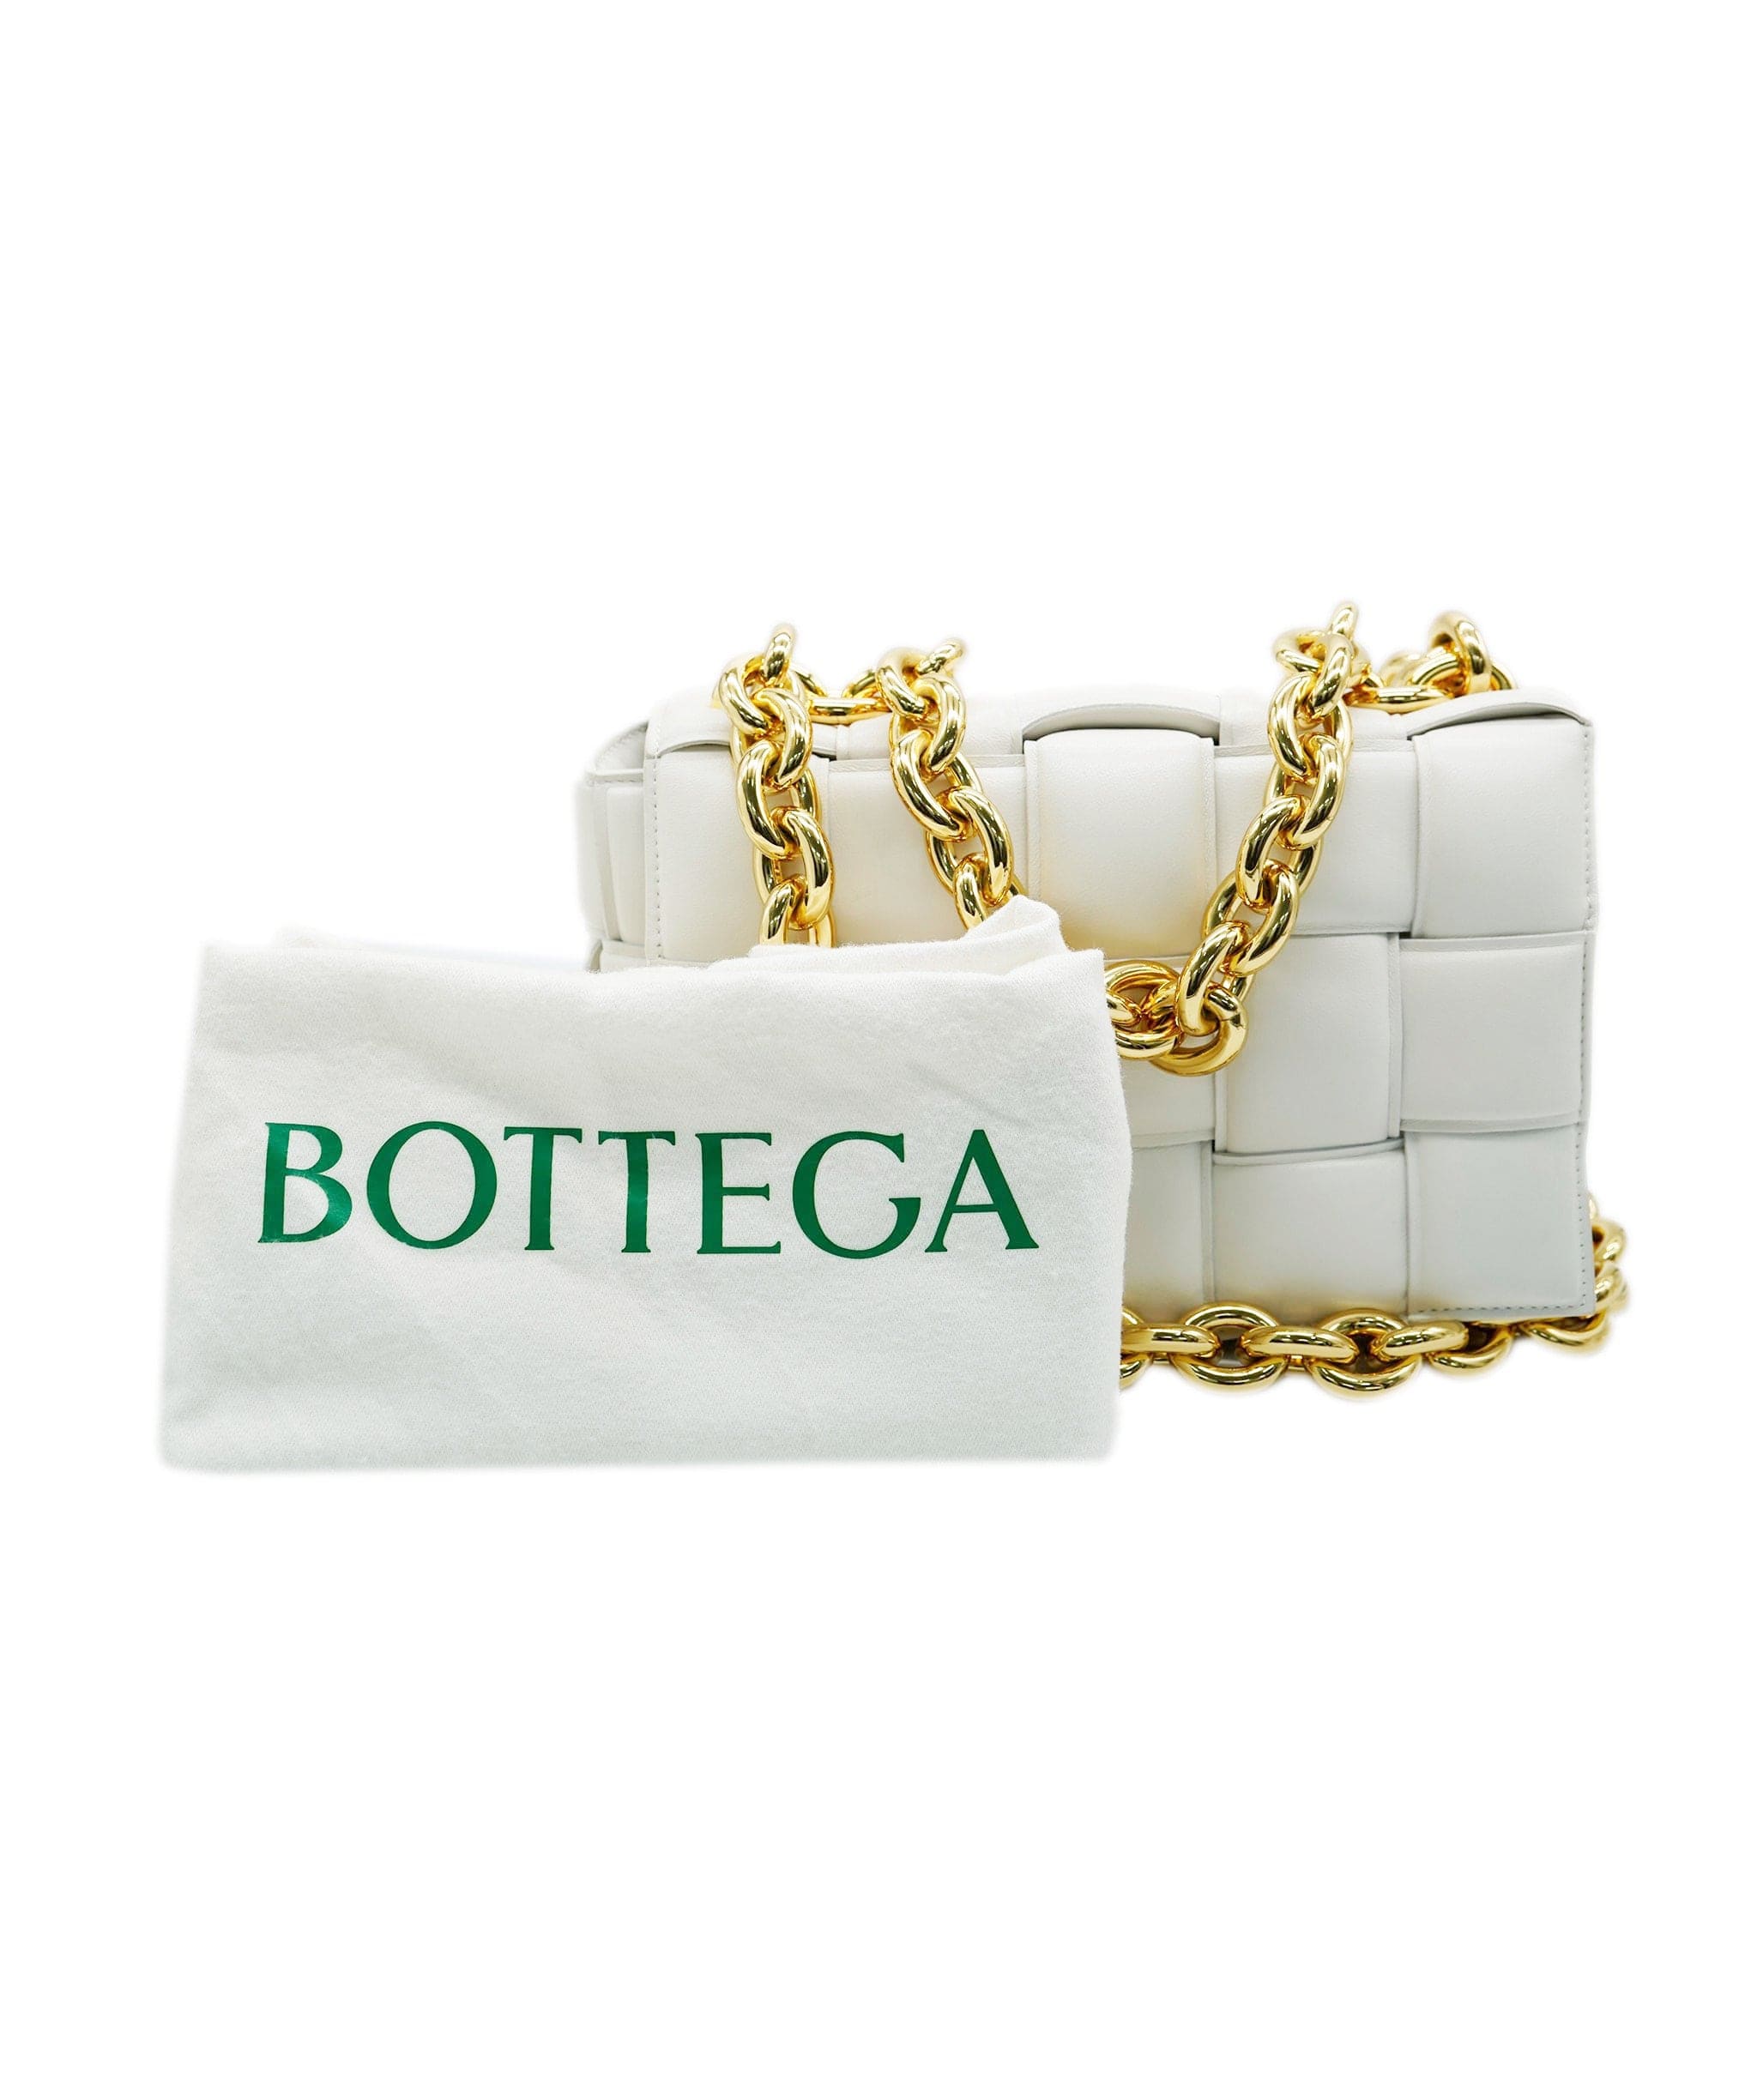 Bottega bottega chained cassette white  AVL1175